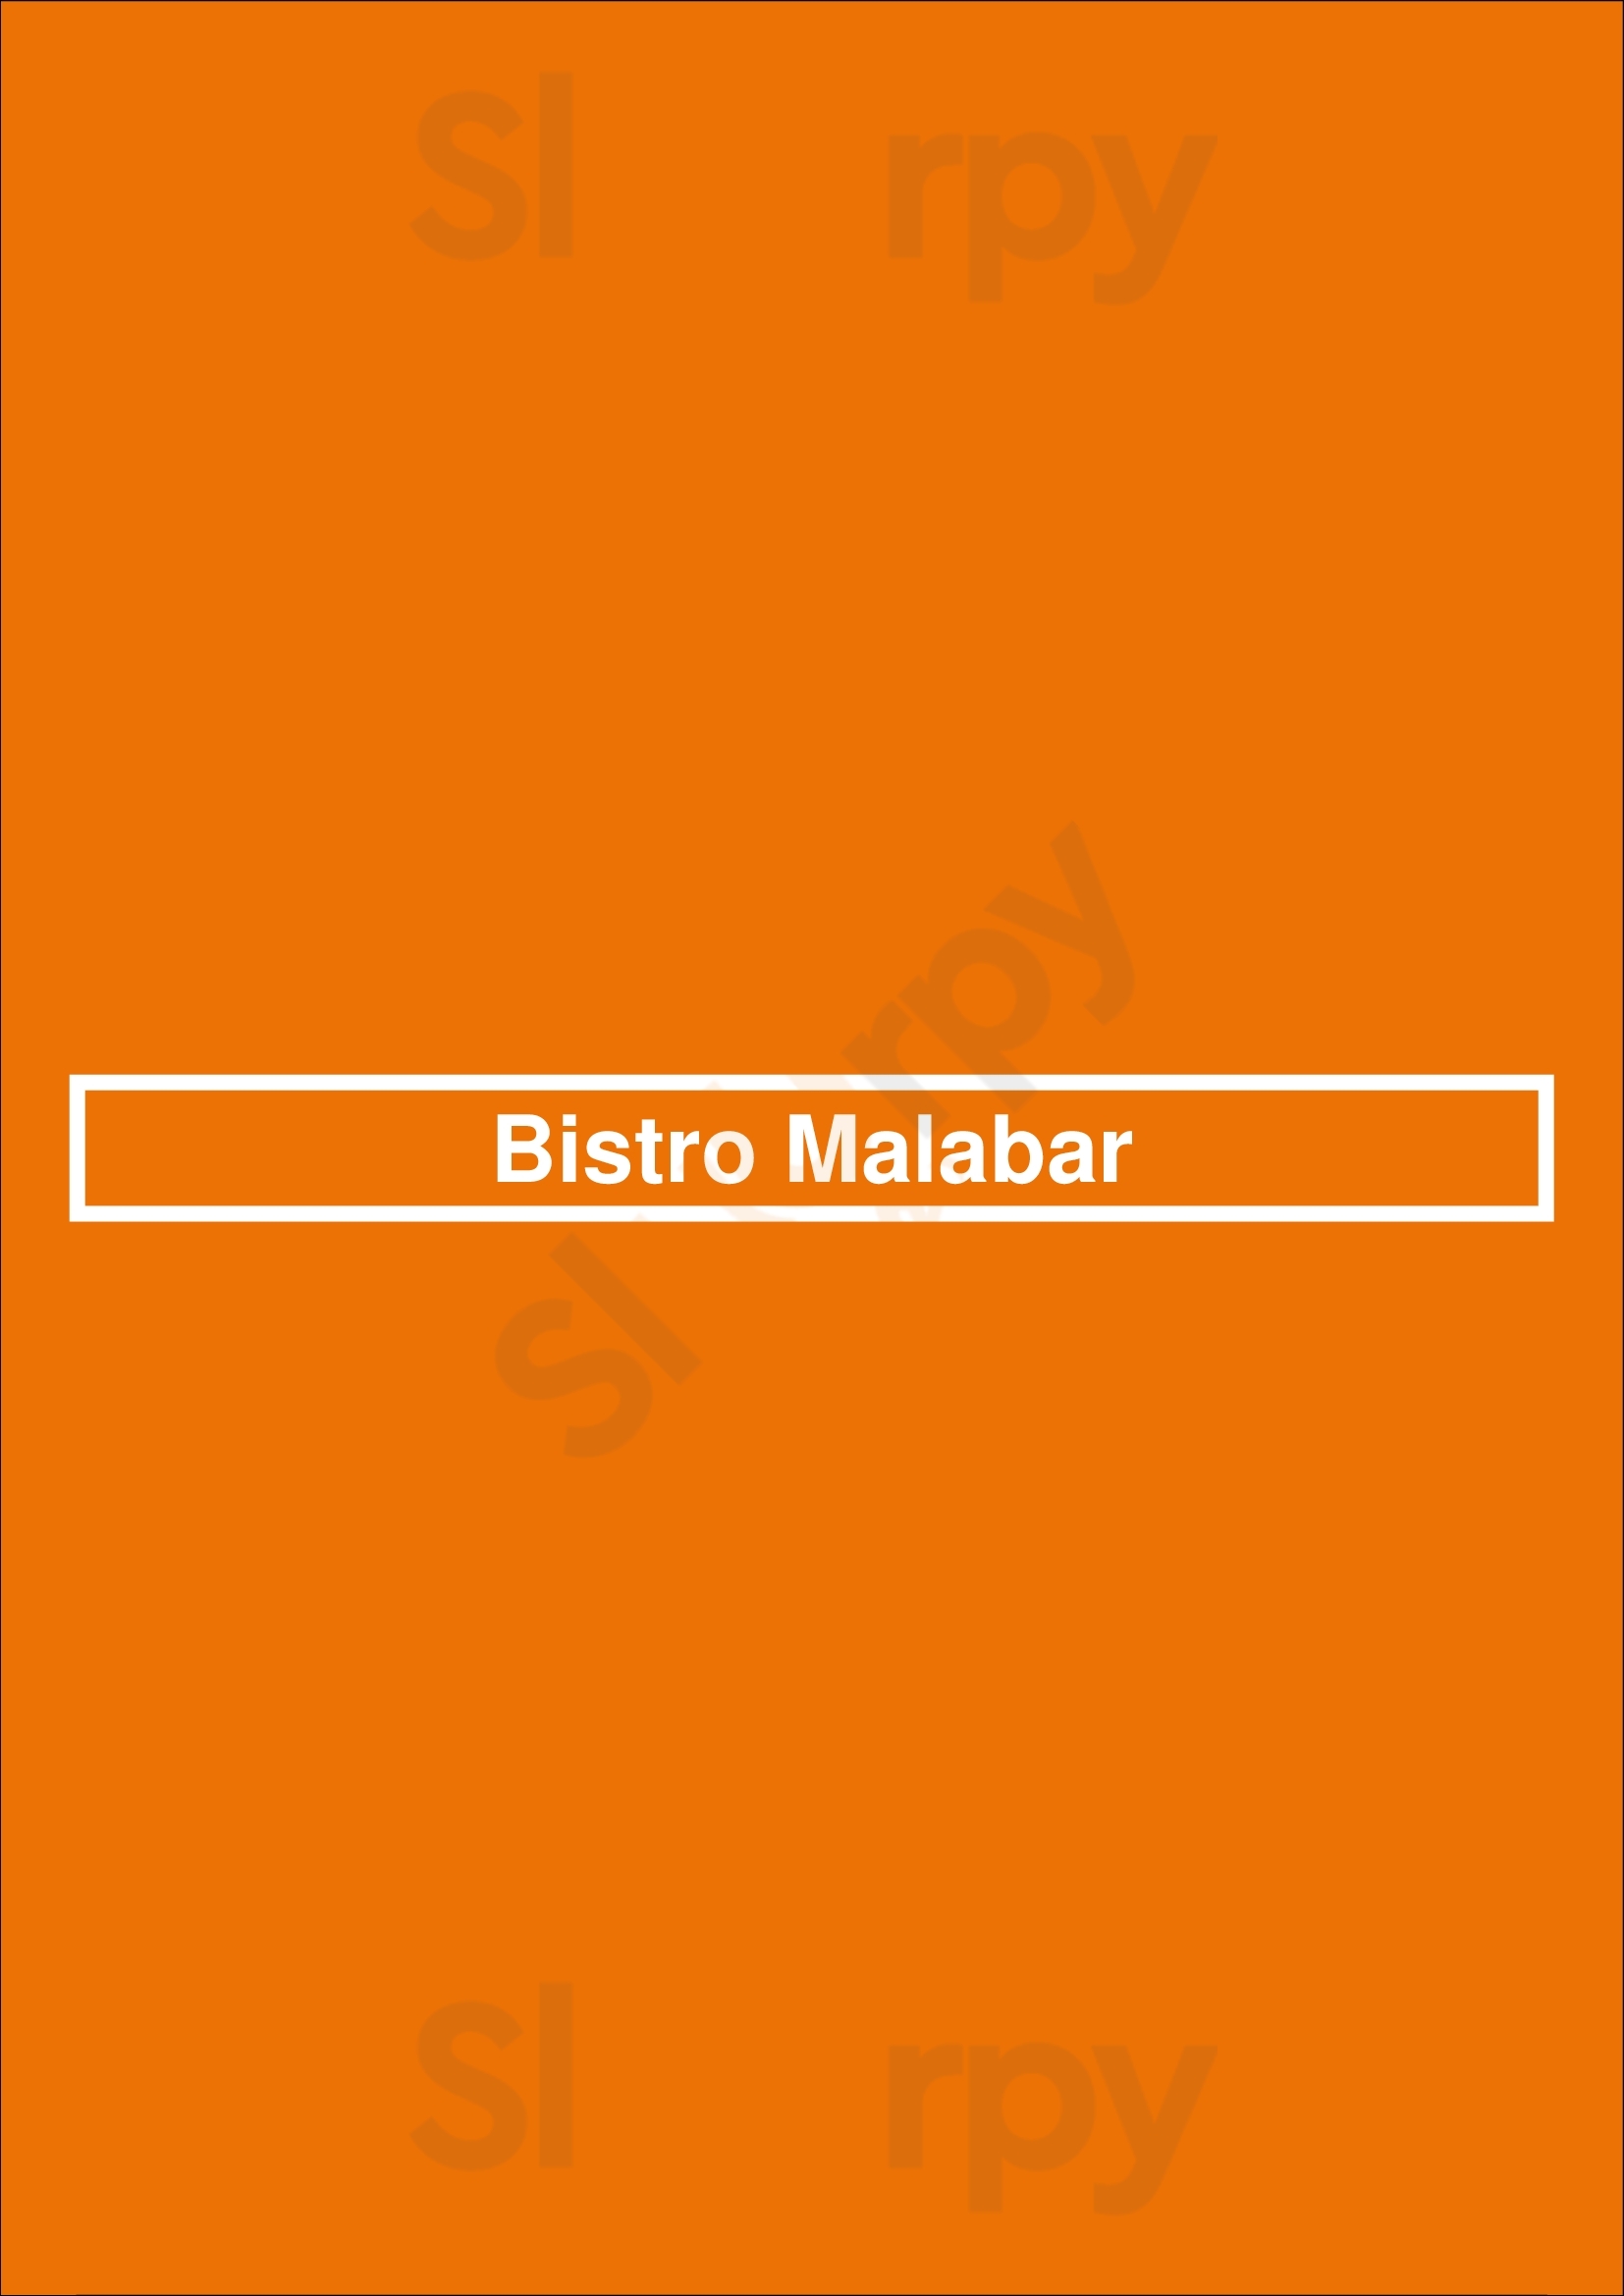 Bistro Malabar Mississauga Menu - 1